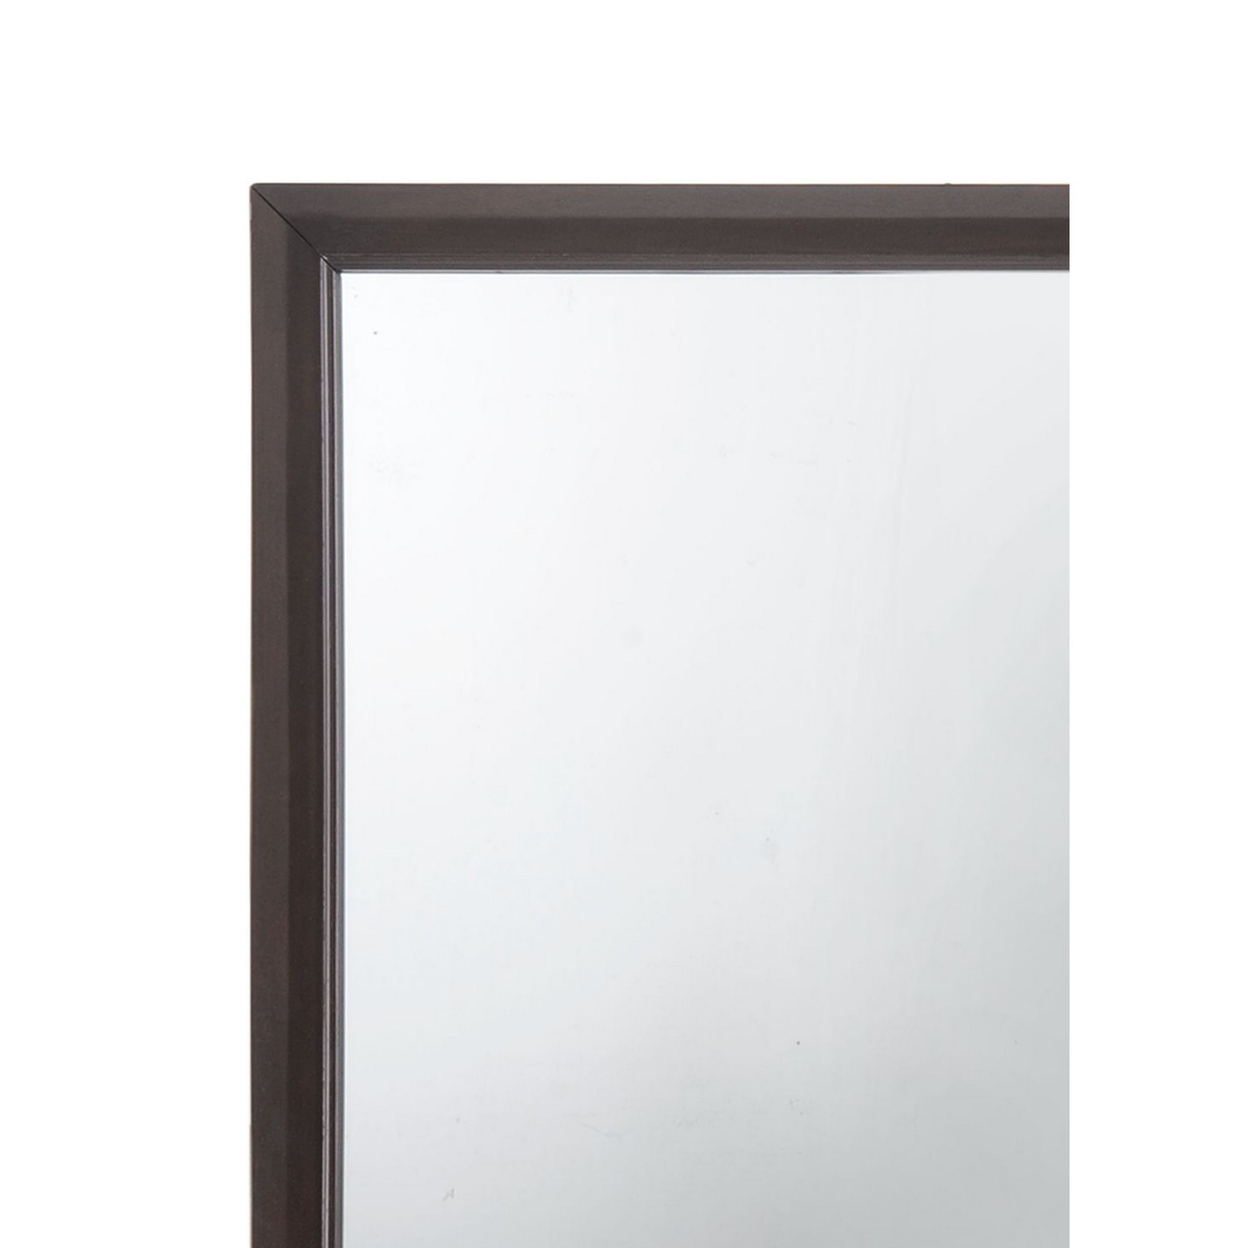 Wooden Frame Mirror, Espresso Brown- Saltoro Sherpi